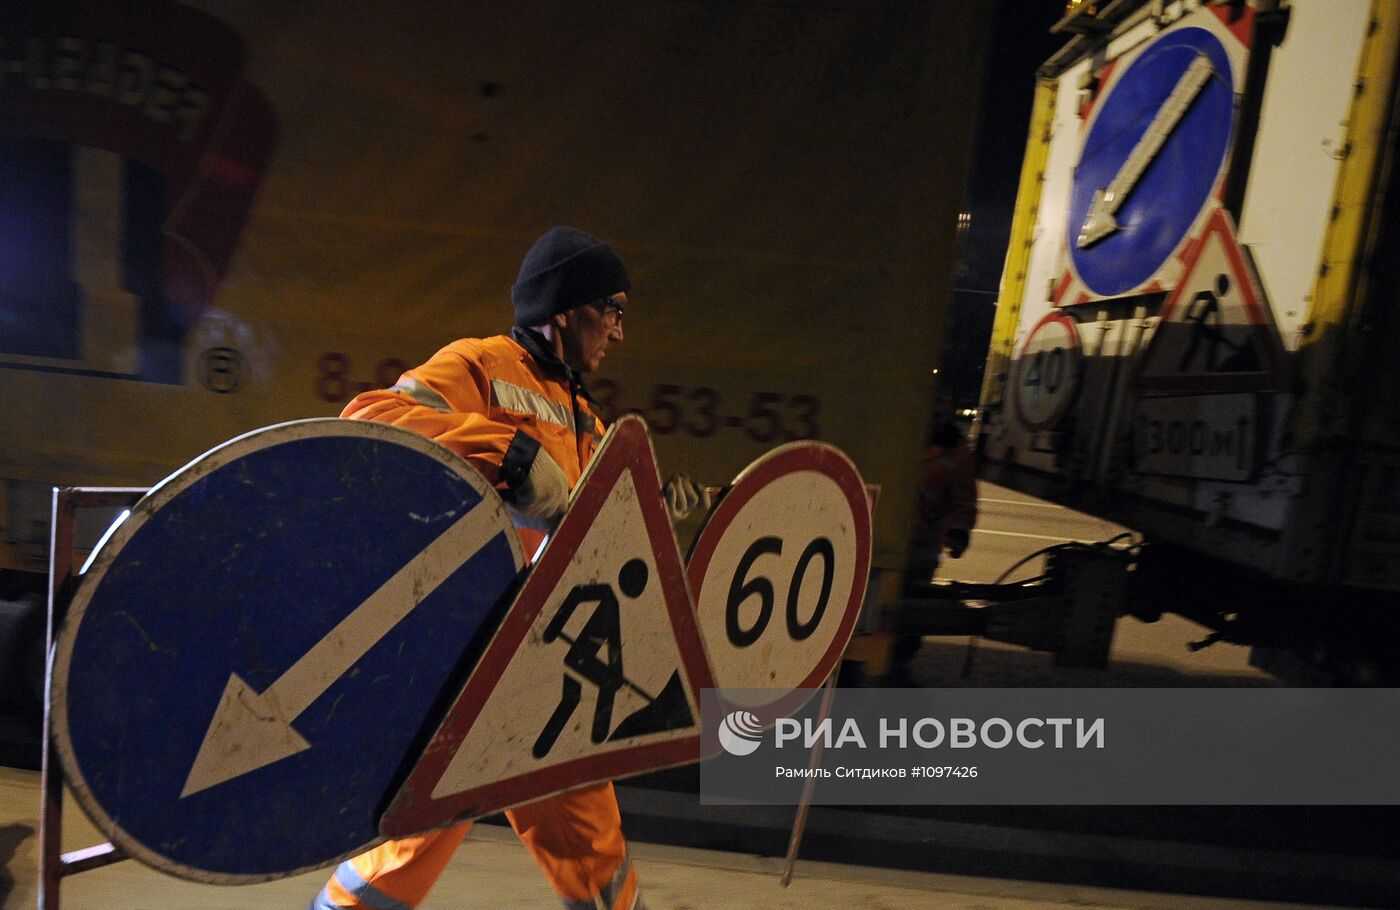 Работы по нанесению дорожной разметки термопластиком в Москве